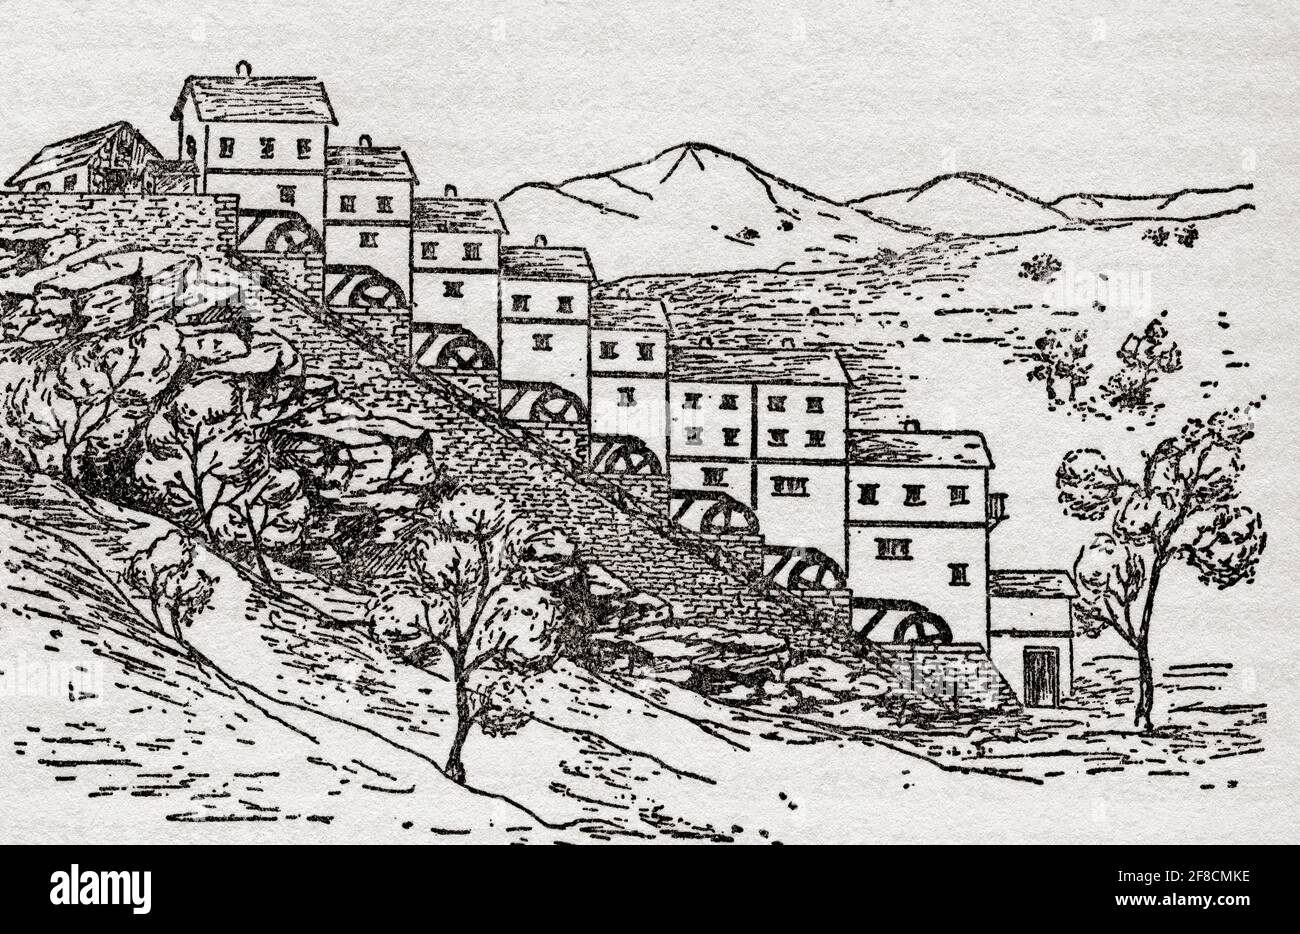 Die Barbegal Wassermühle, Fontvieille, in der Nähe von Arles, Frankreich. Nach einer Illustration von Edgar Holloway. Stockfoto